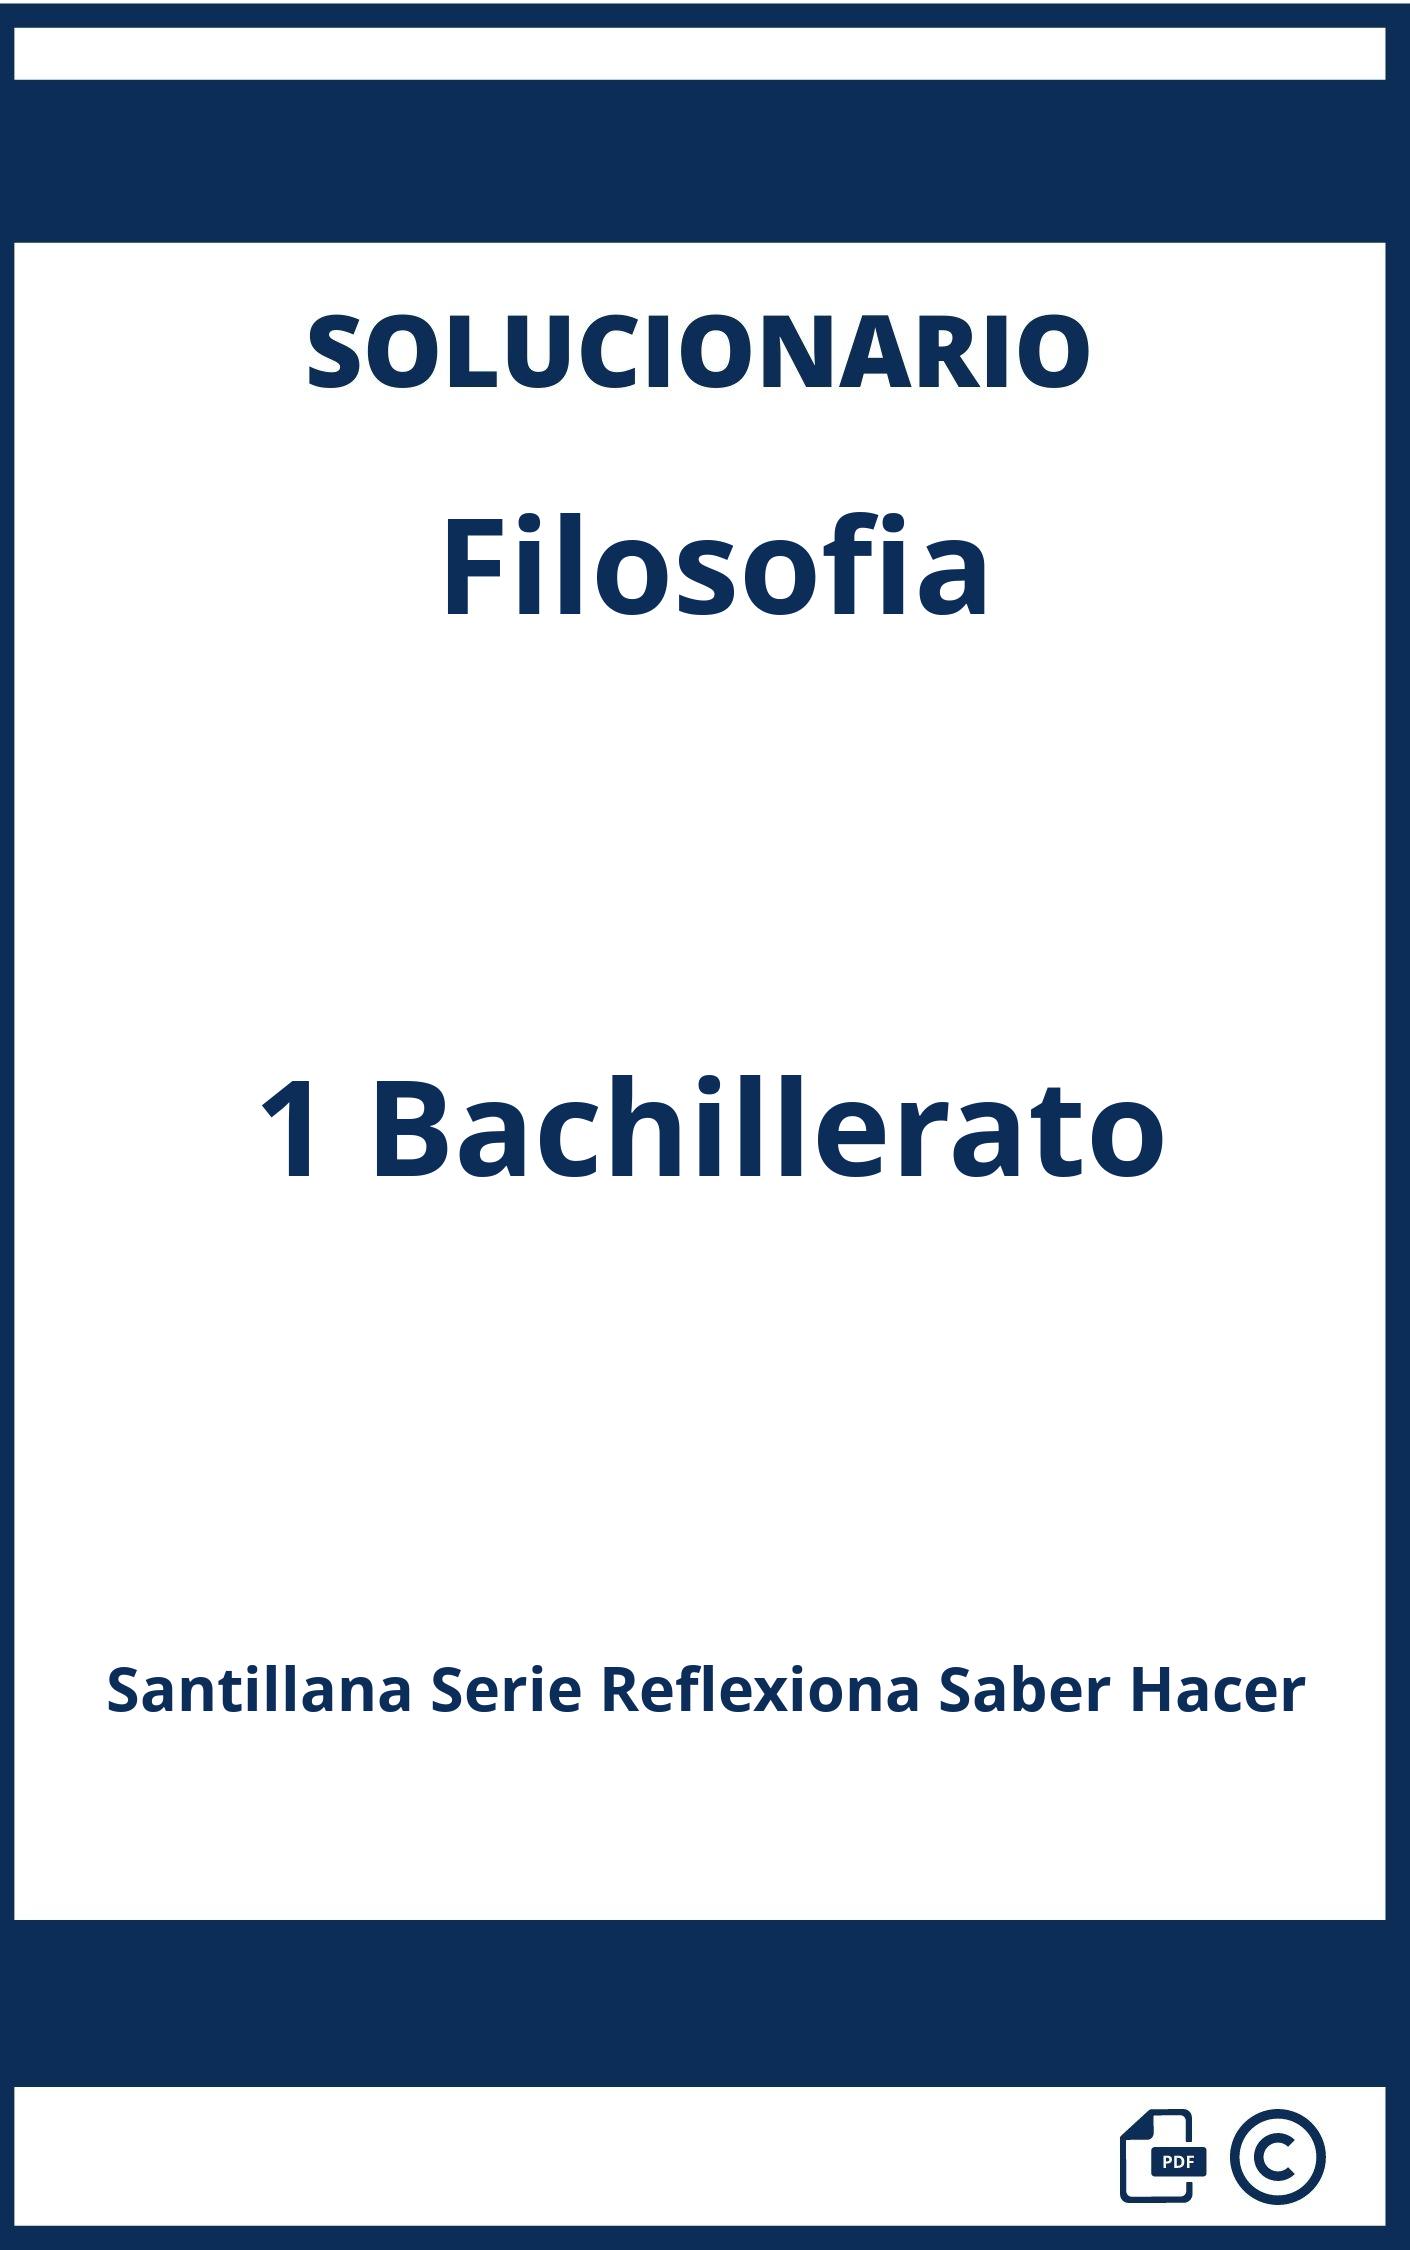 Solucionario Filosofia 1 Bachillerato Santillana Serie Reflexiona Saber Hacer